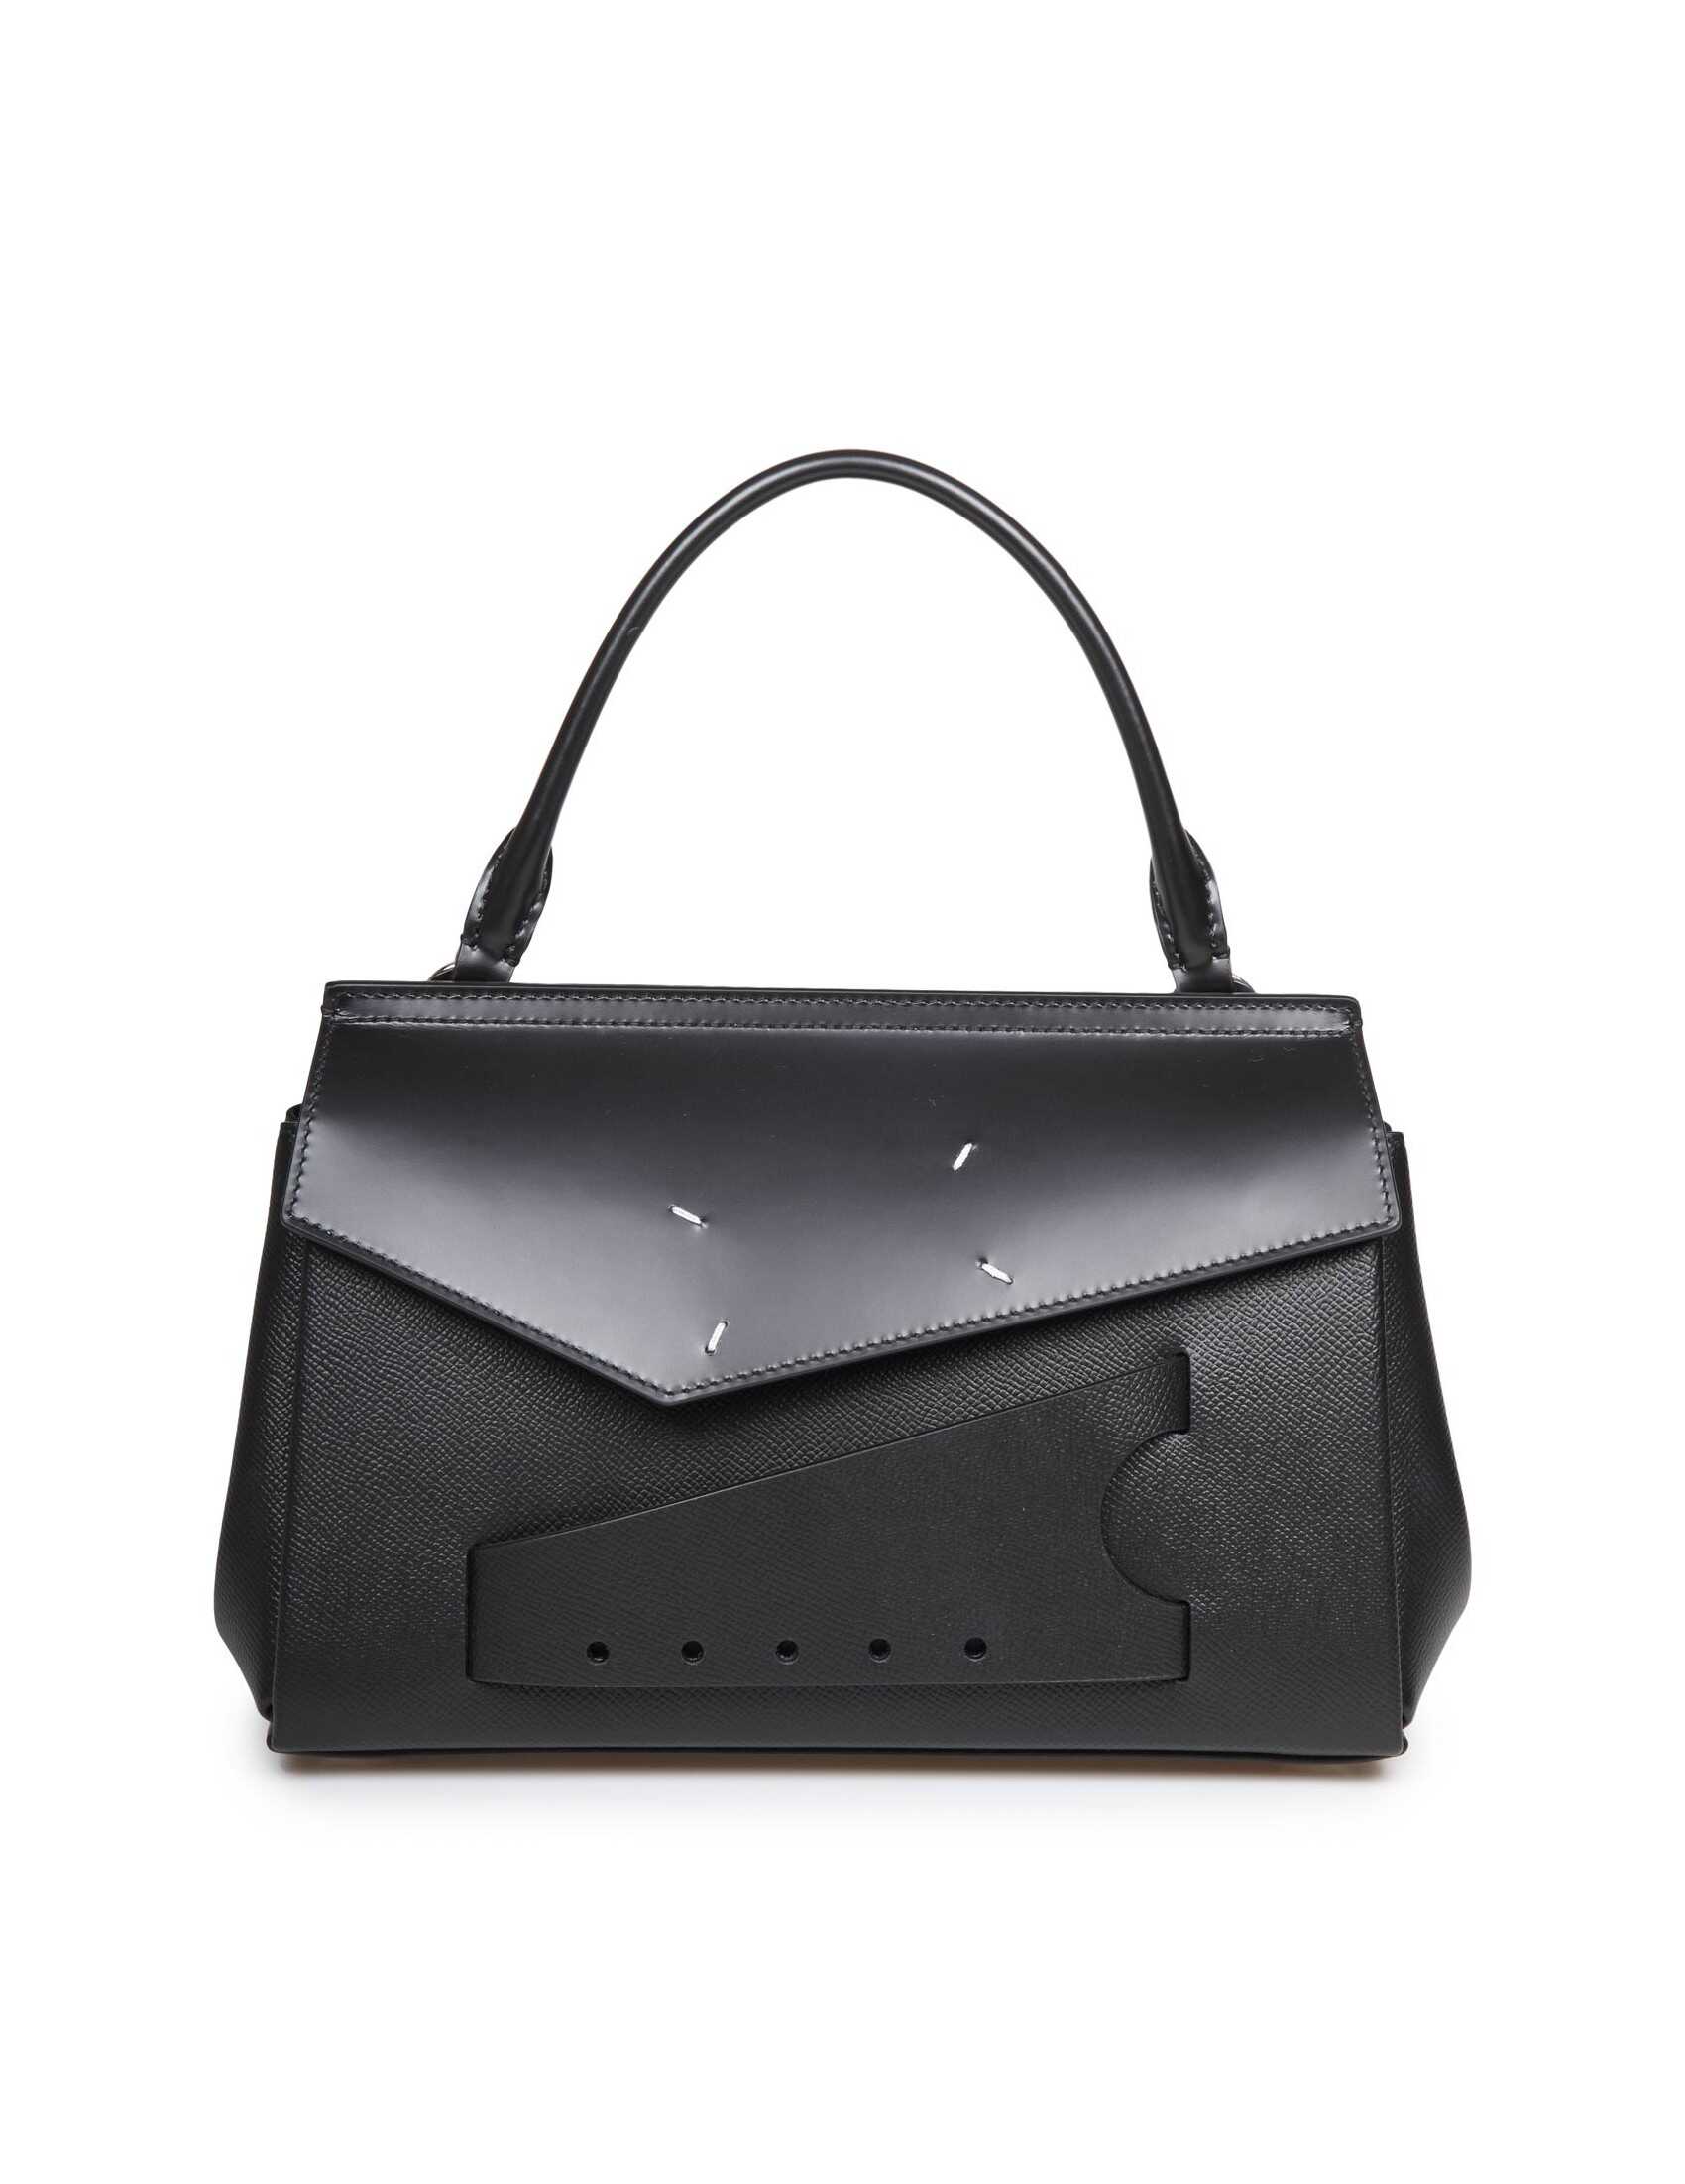 Maison Margiela Maison margiela snatched classique handbag color black Black